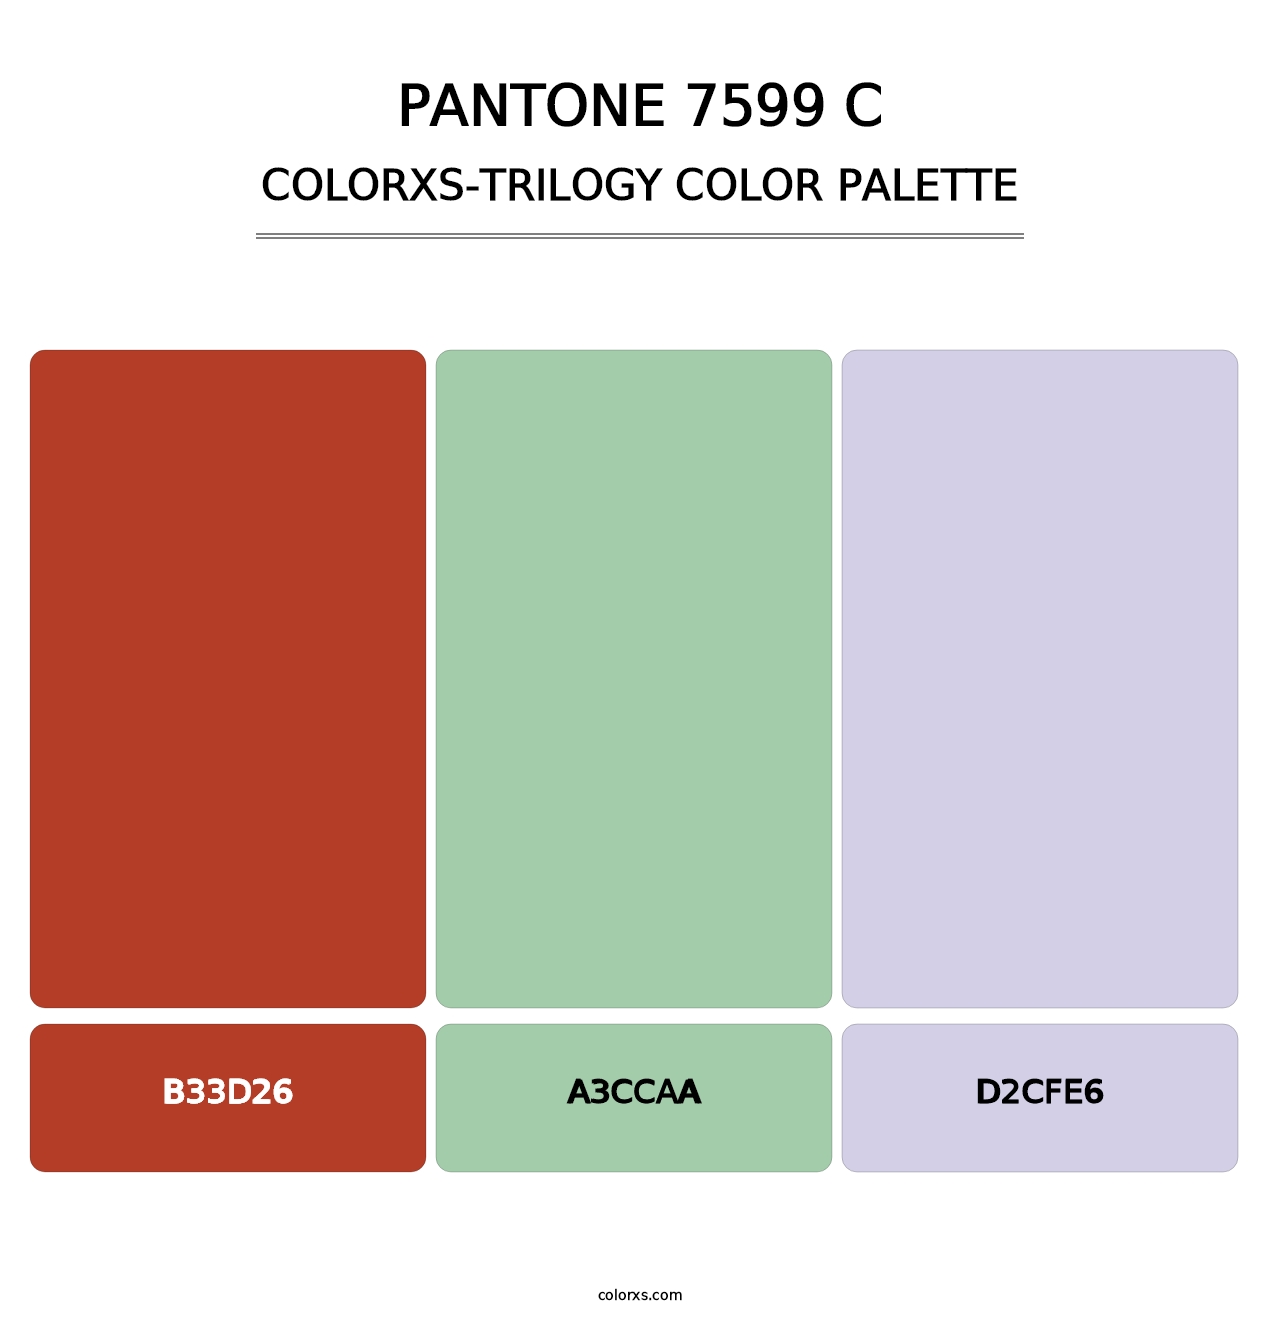 PANTONE 7599 C - Colorxs Trilogy Palette